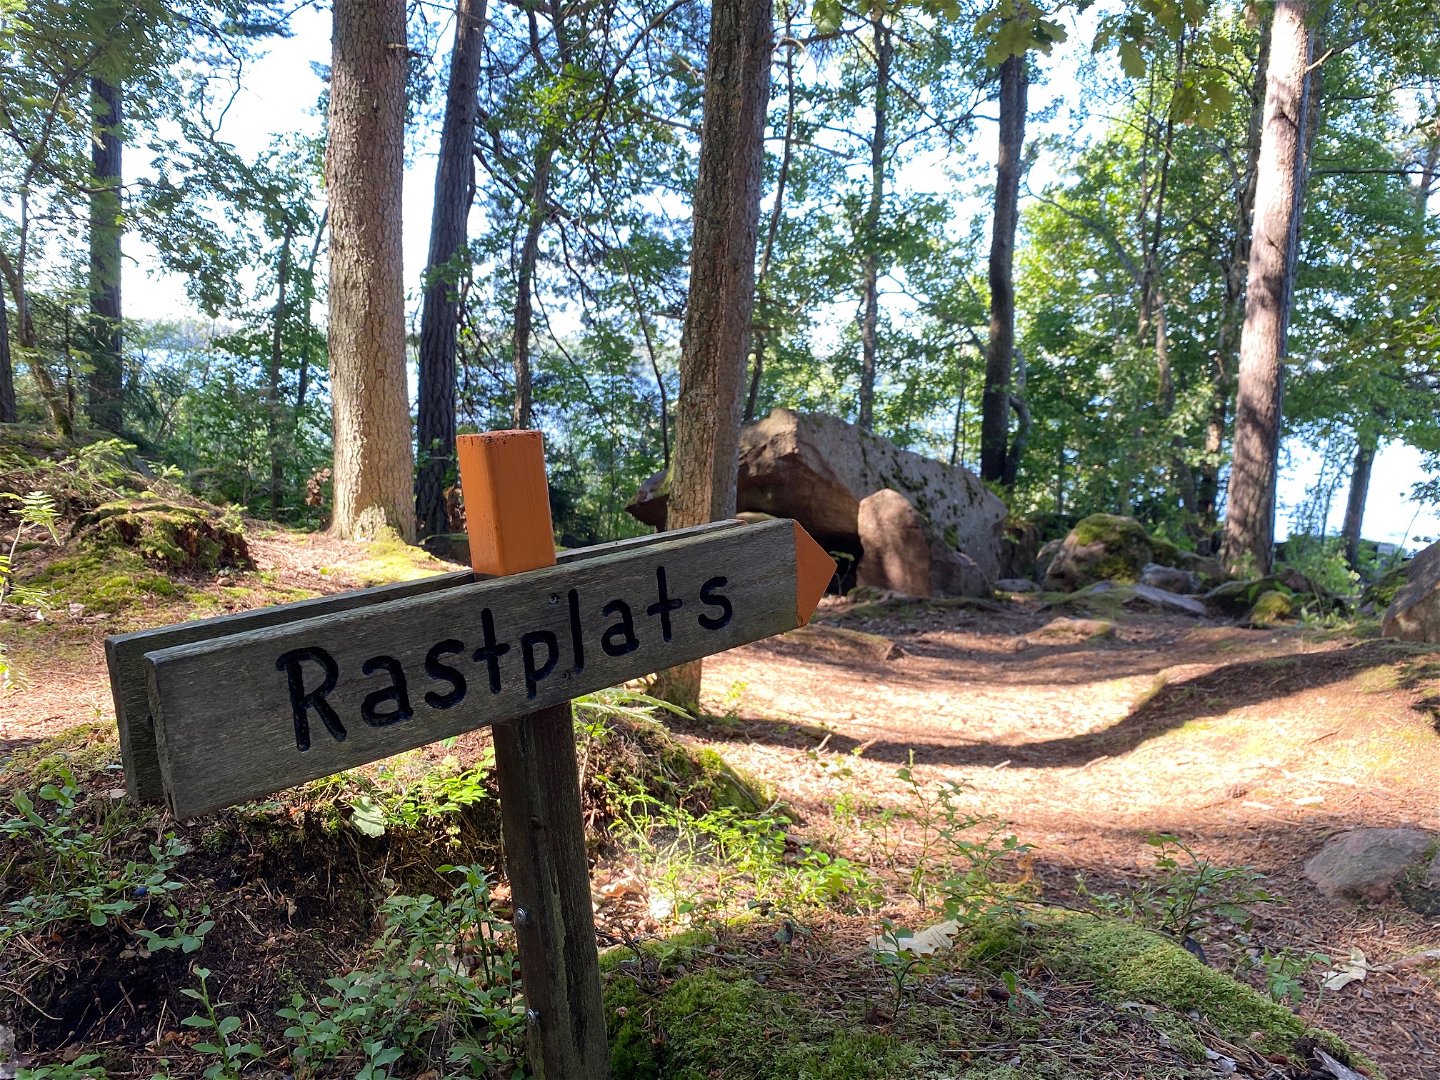 Närbild på en vägvisare med texten "rastplats" på. I bakgrunden är det en vandringsstig som går genom skogen.